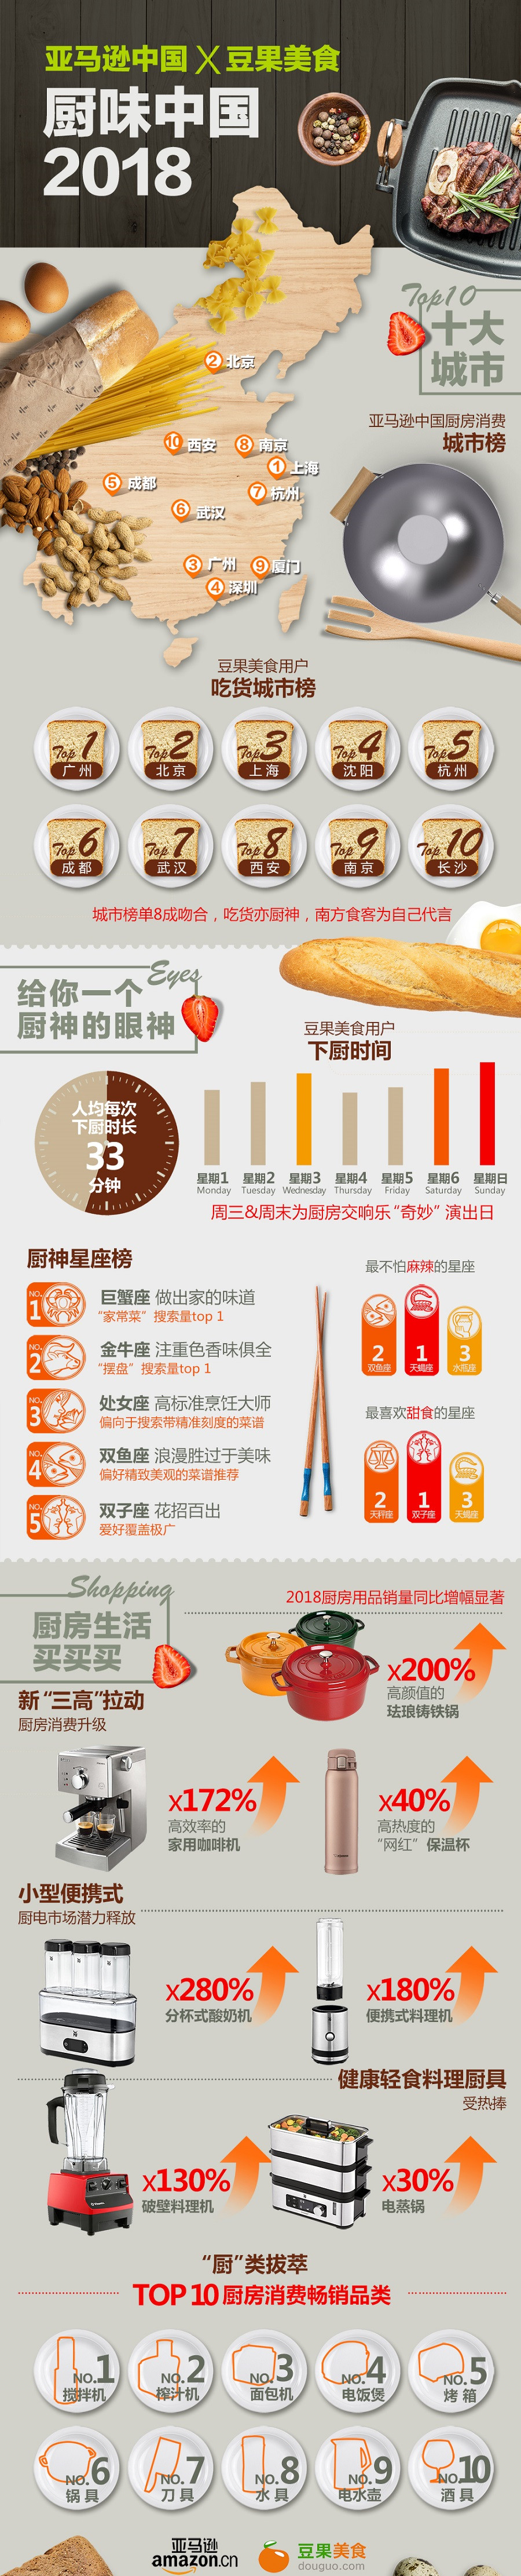 亚马逊中国携手豆果美食发布2018“厨房经济”大数据